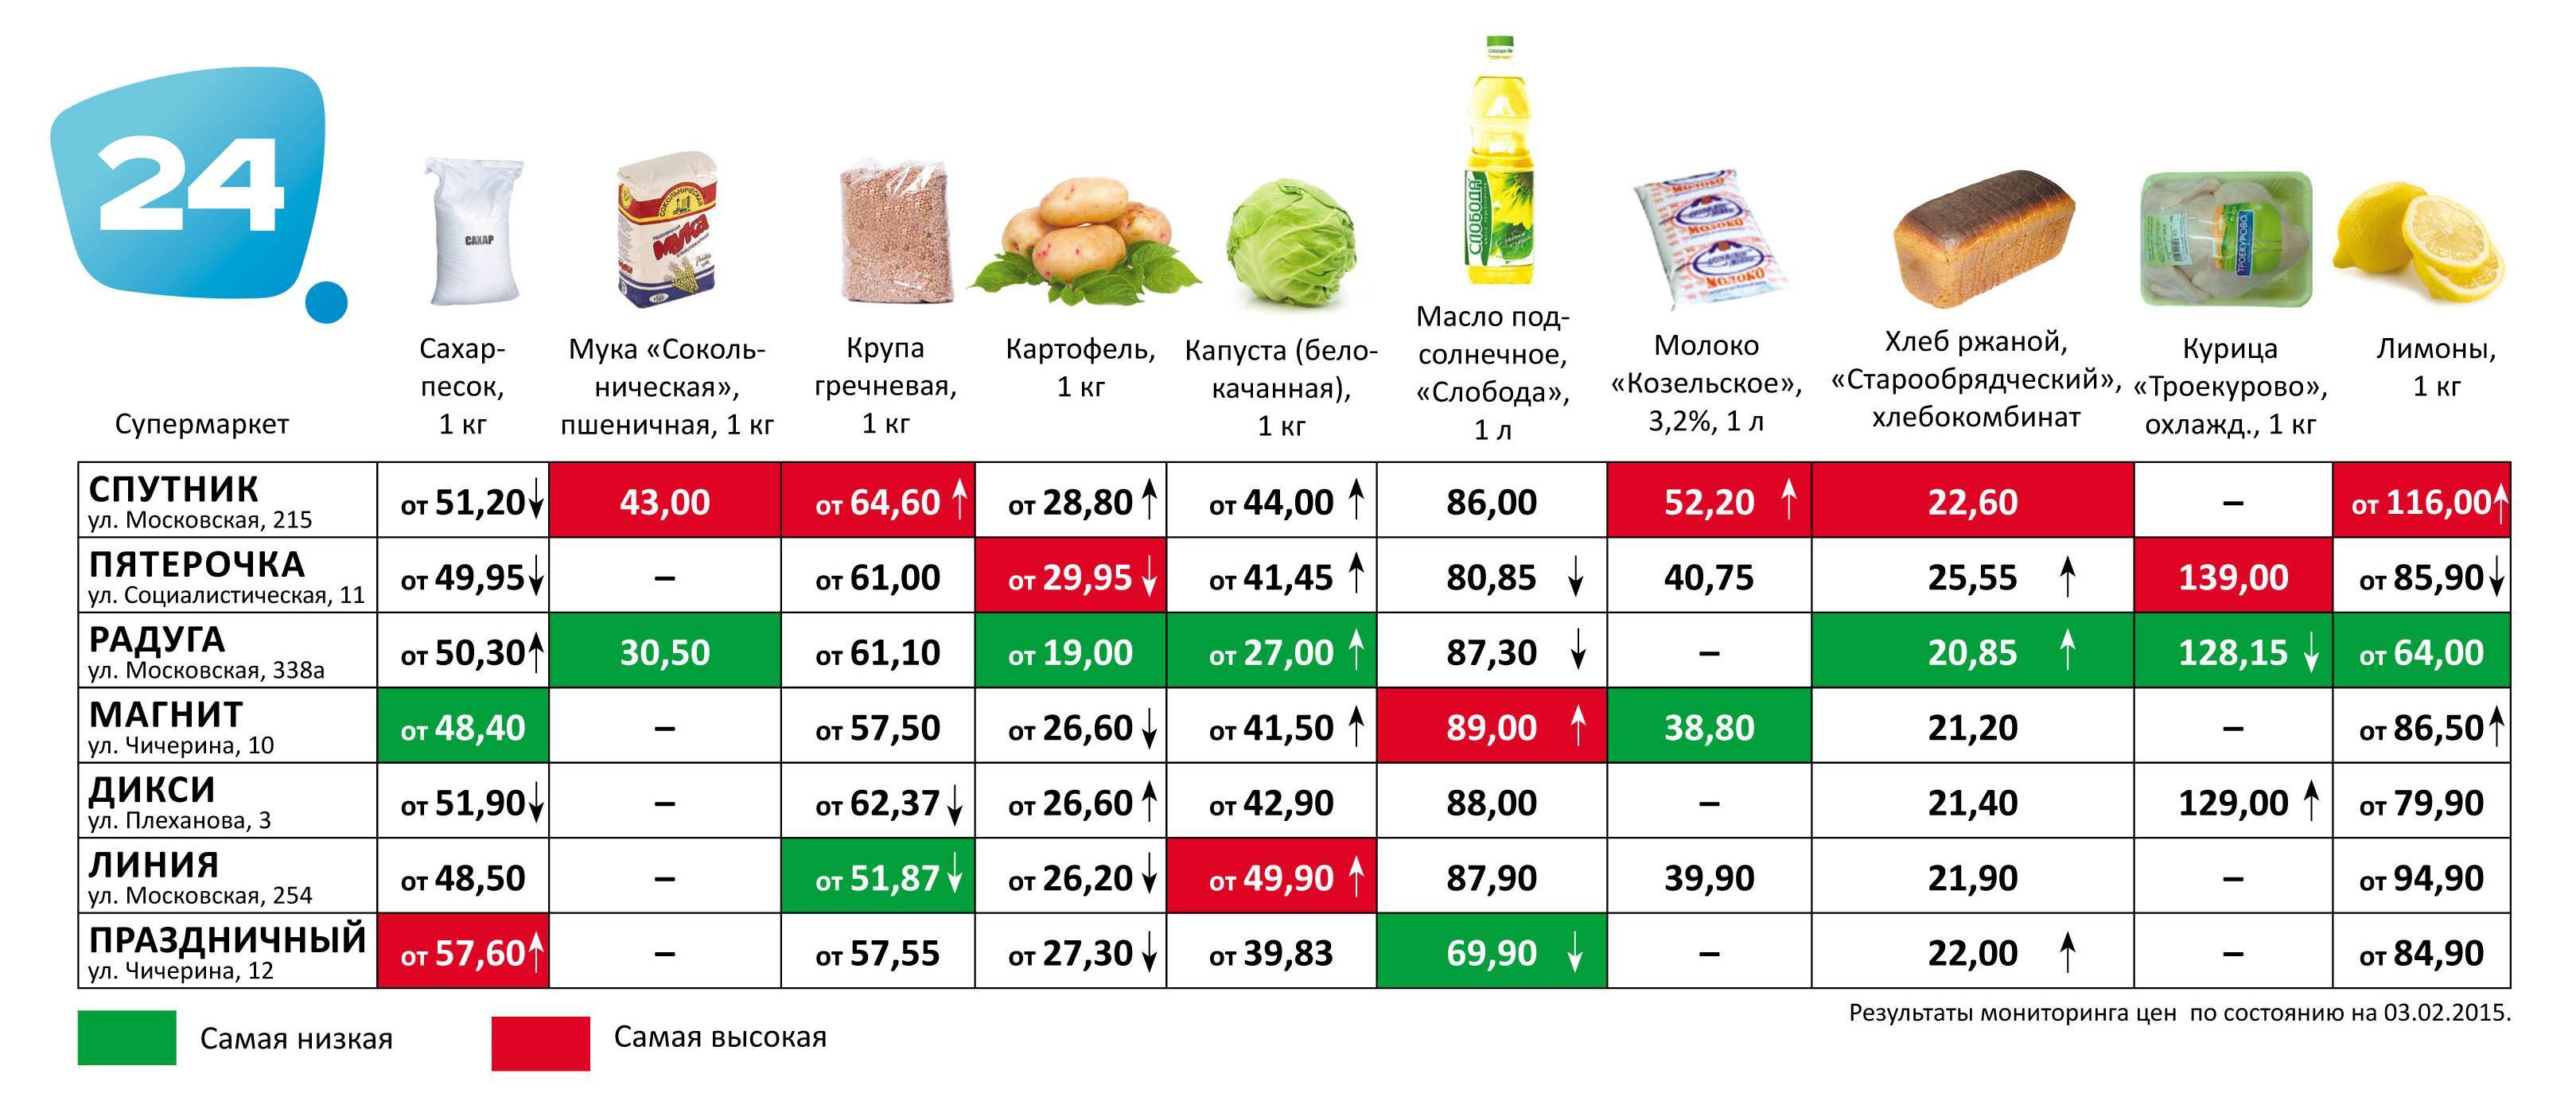 Хит сезона: выбираем продукты по времени года / подробный список – статья из рубрики "что съесть" на food.ru